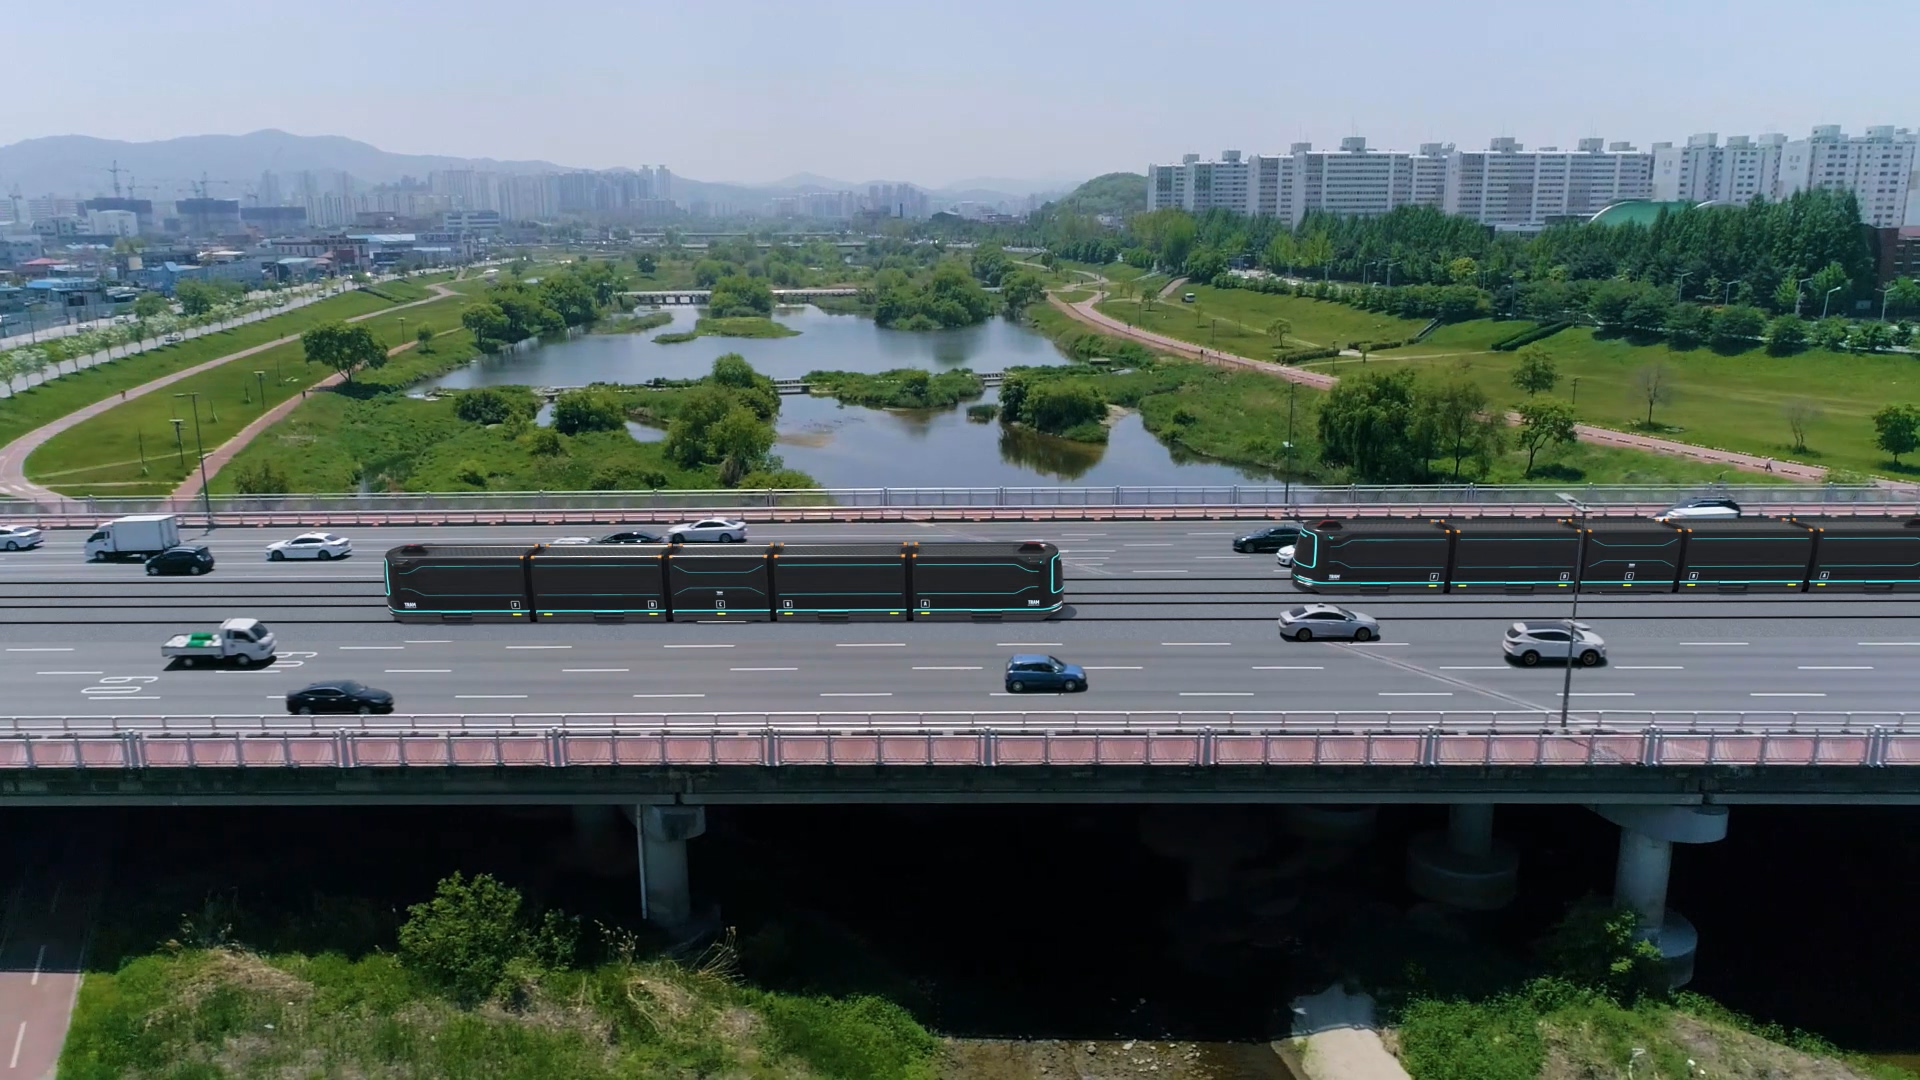 오는 2025년 이후 전국 처음으로 도심을 달리게 될 대전 트램 홍보영상. 대전시 제공